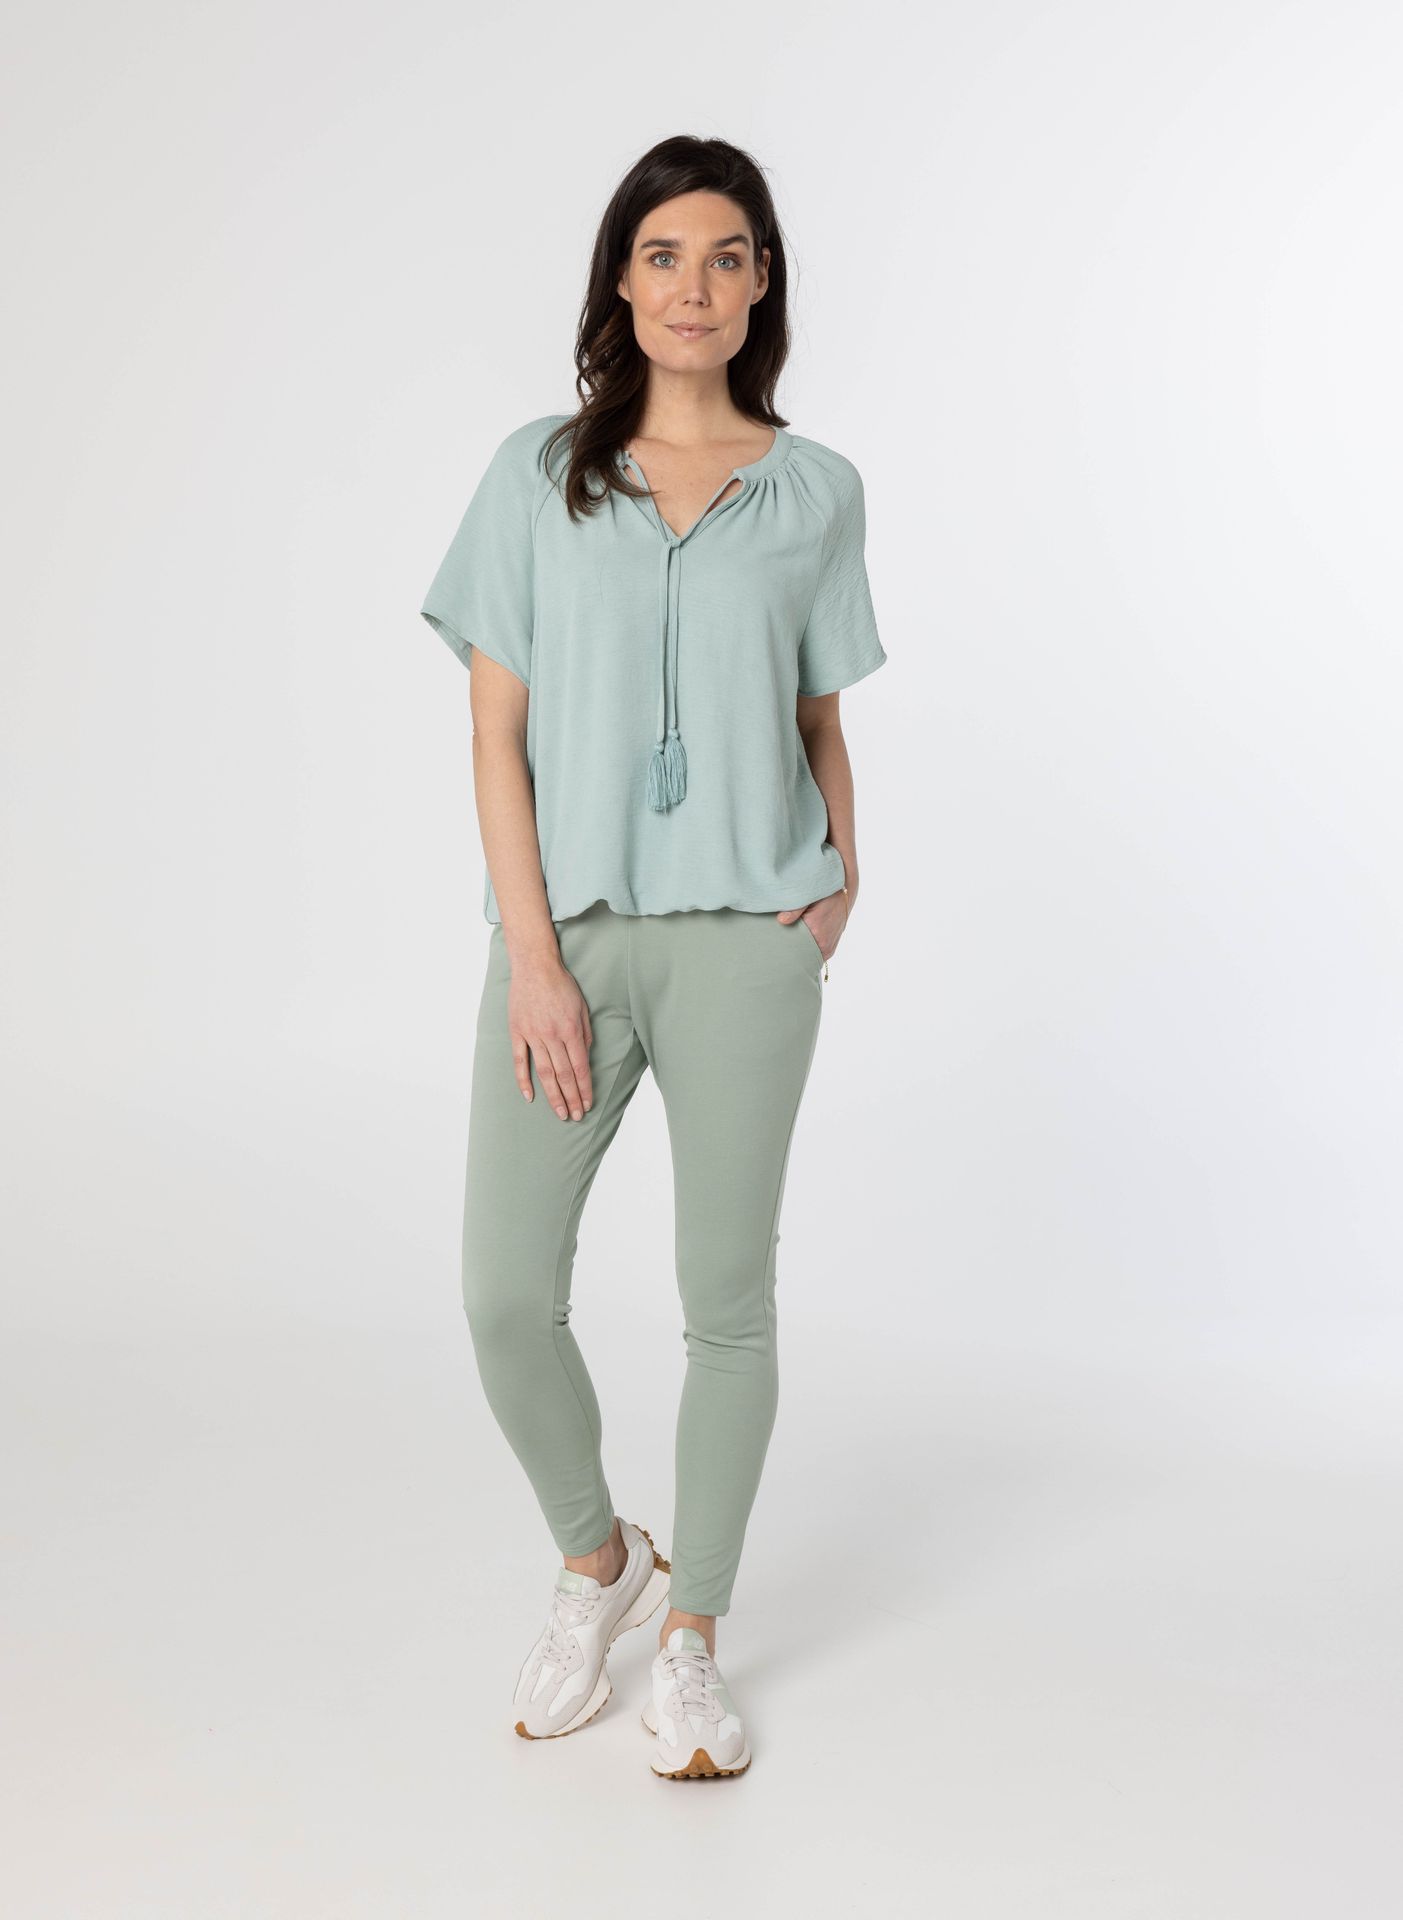 Norah Lichtgroene blouse light green 213965-515